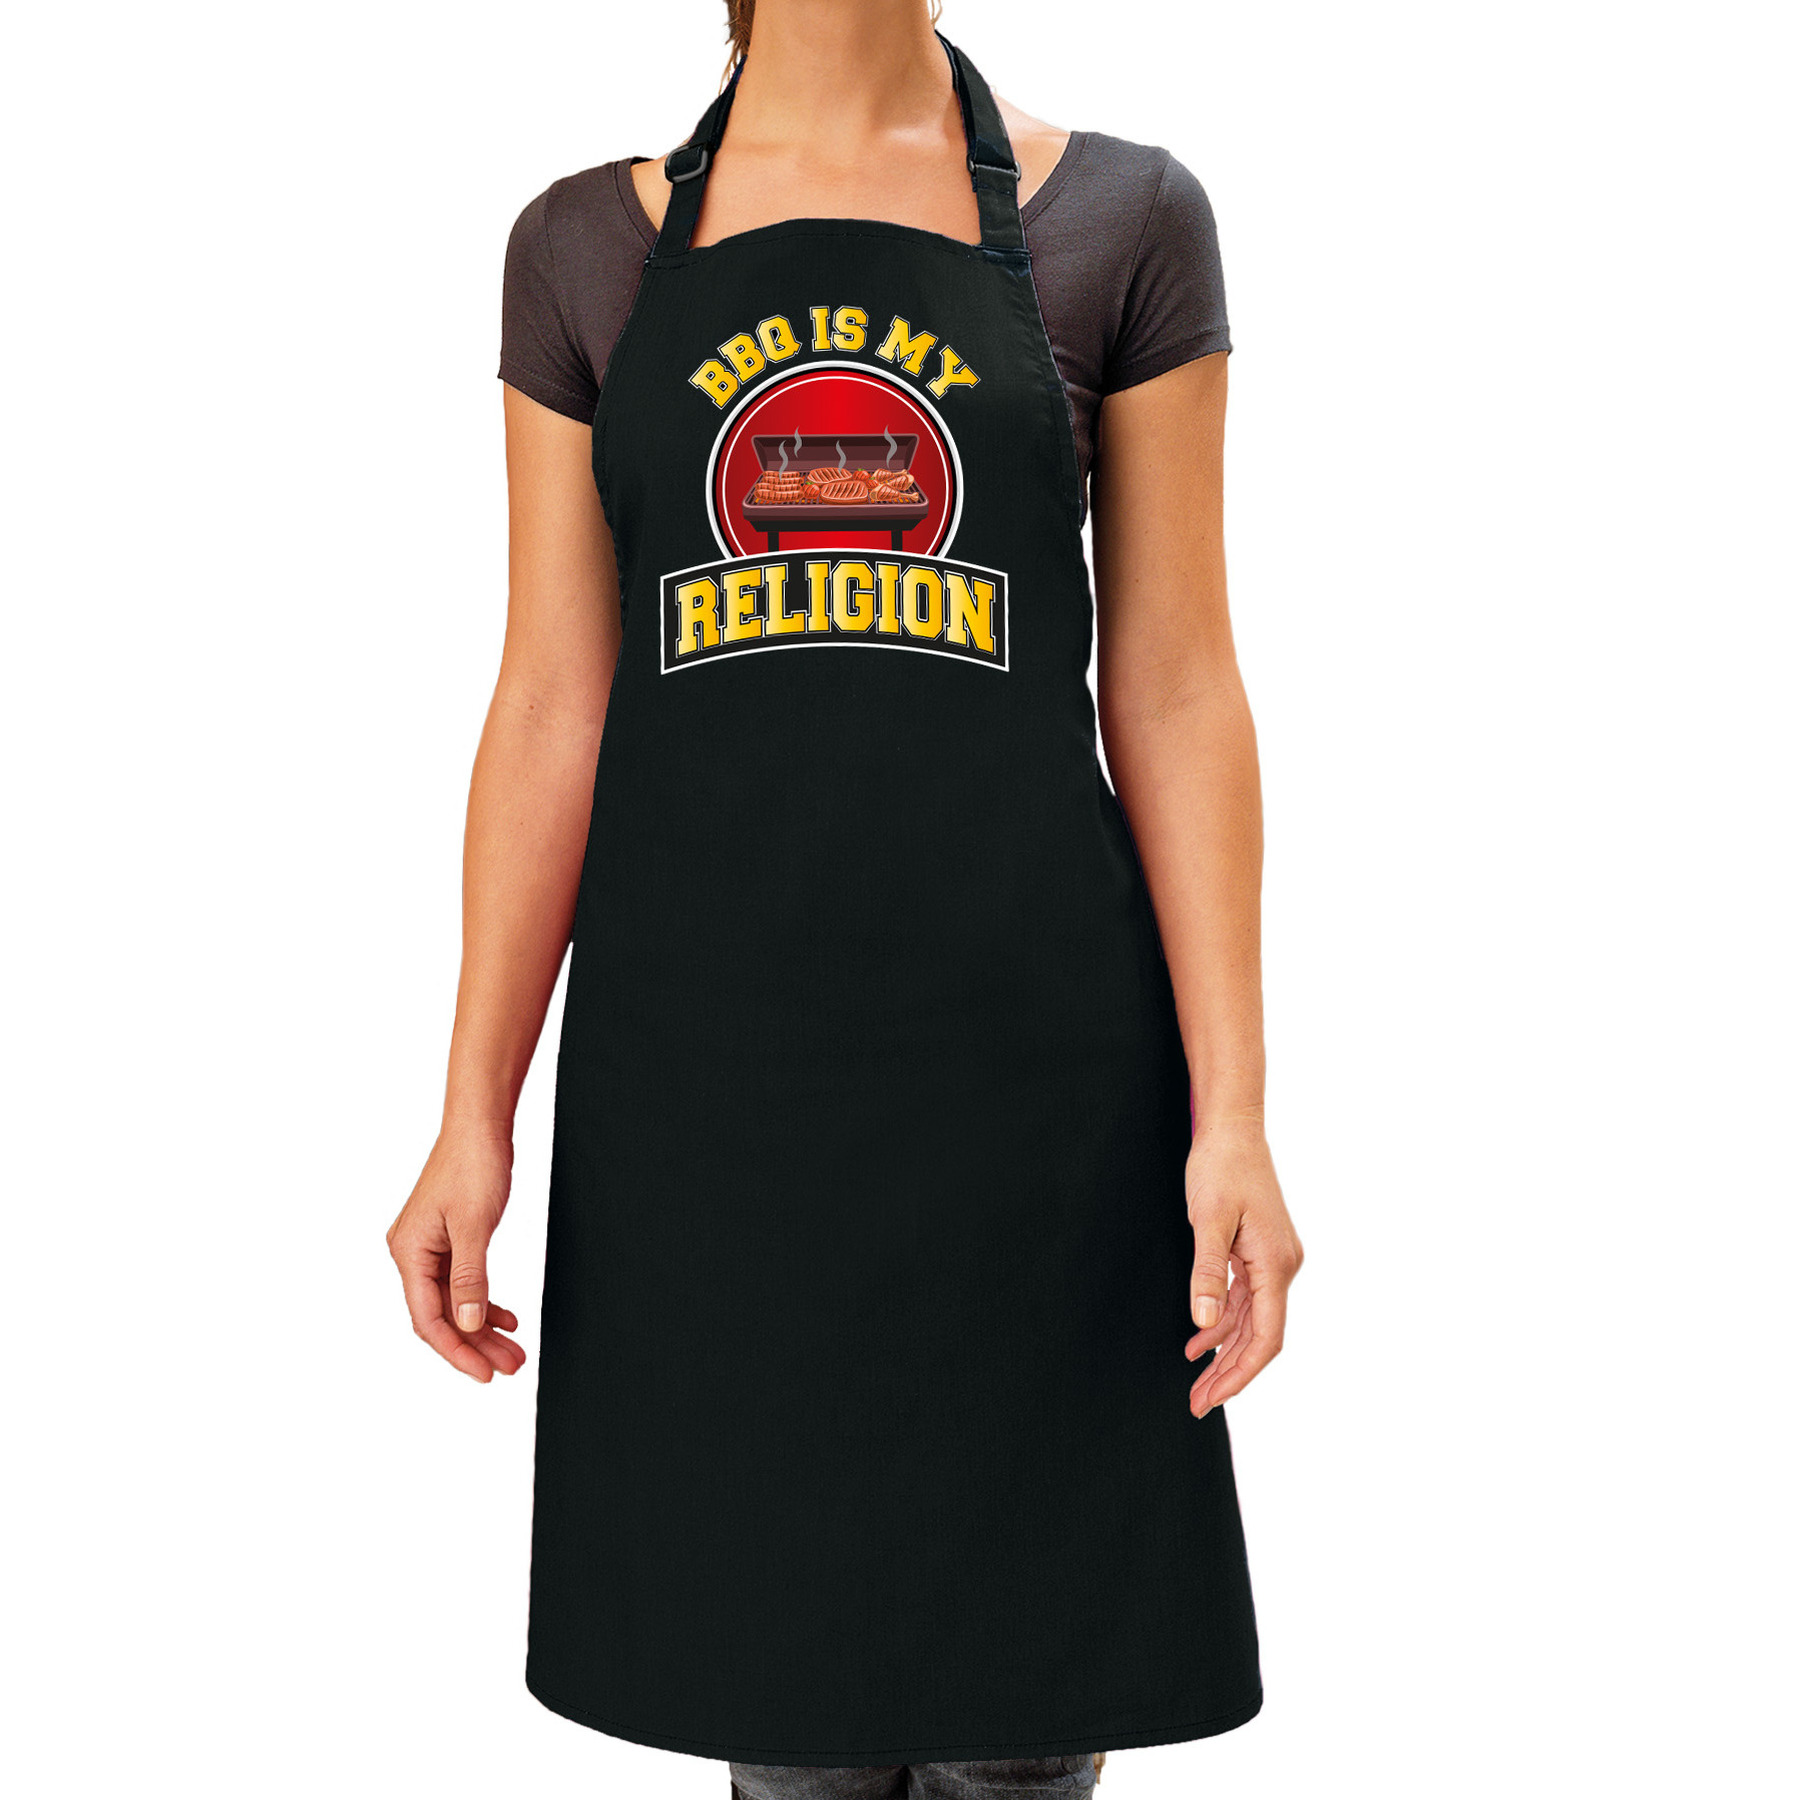 Keukenschort-barbecue schort voor dames BBQ is my religion zwart cadeau Moederdag barbeque